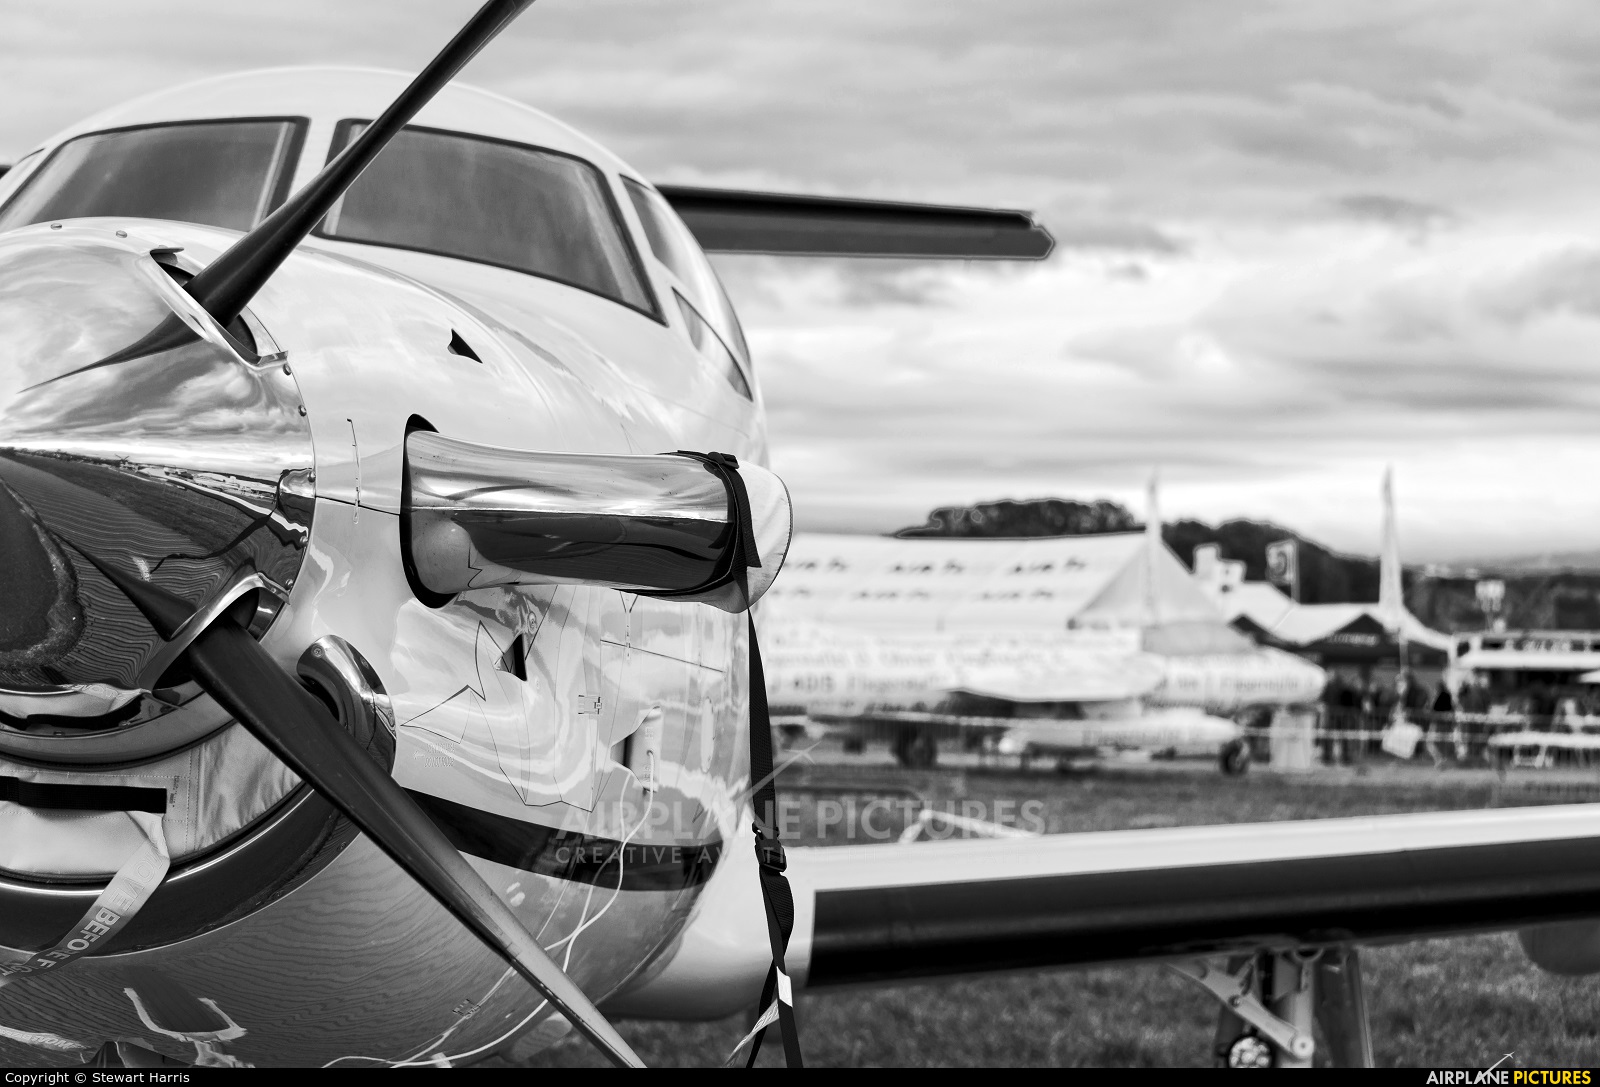 Pilatus HB-FVY aircraft at Payerne